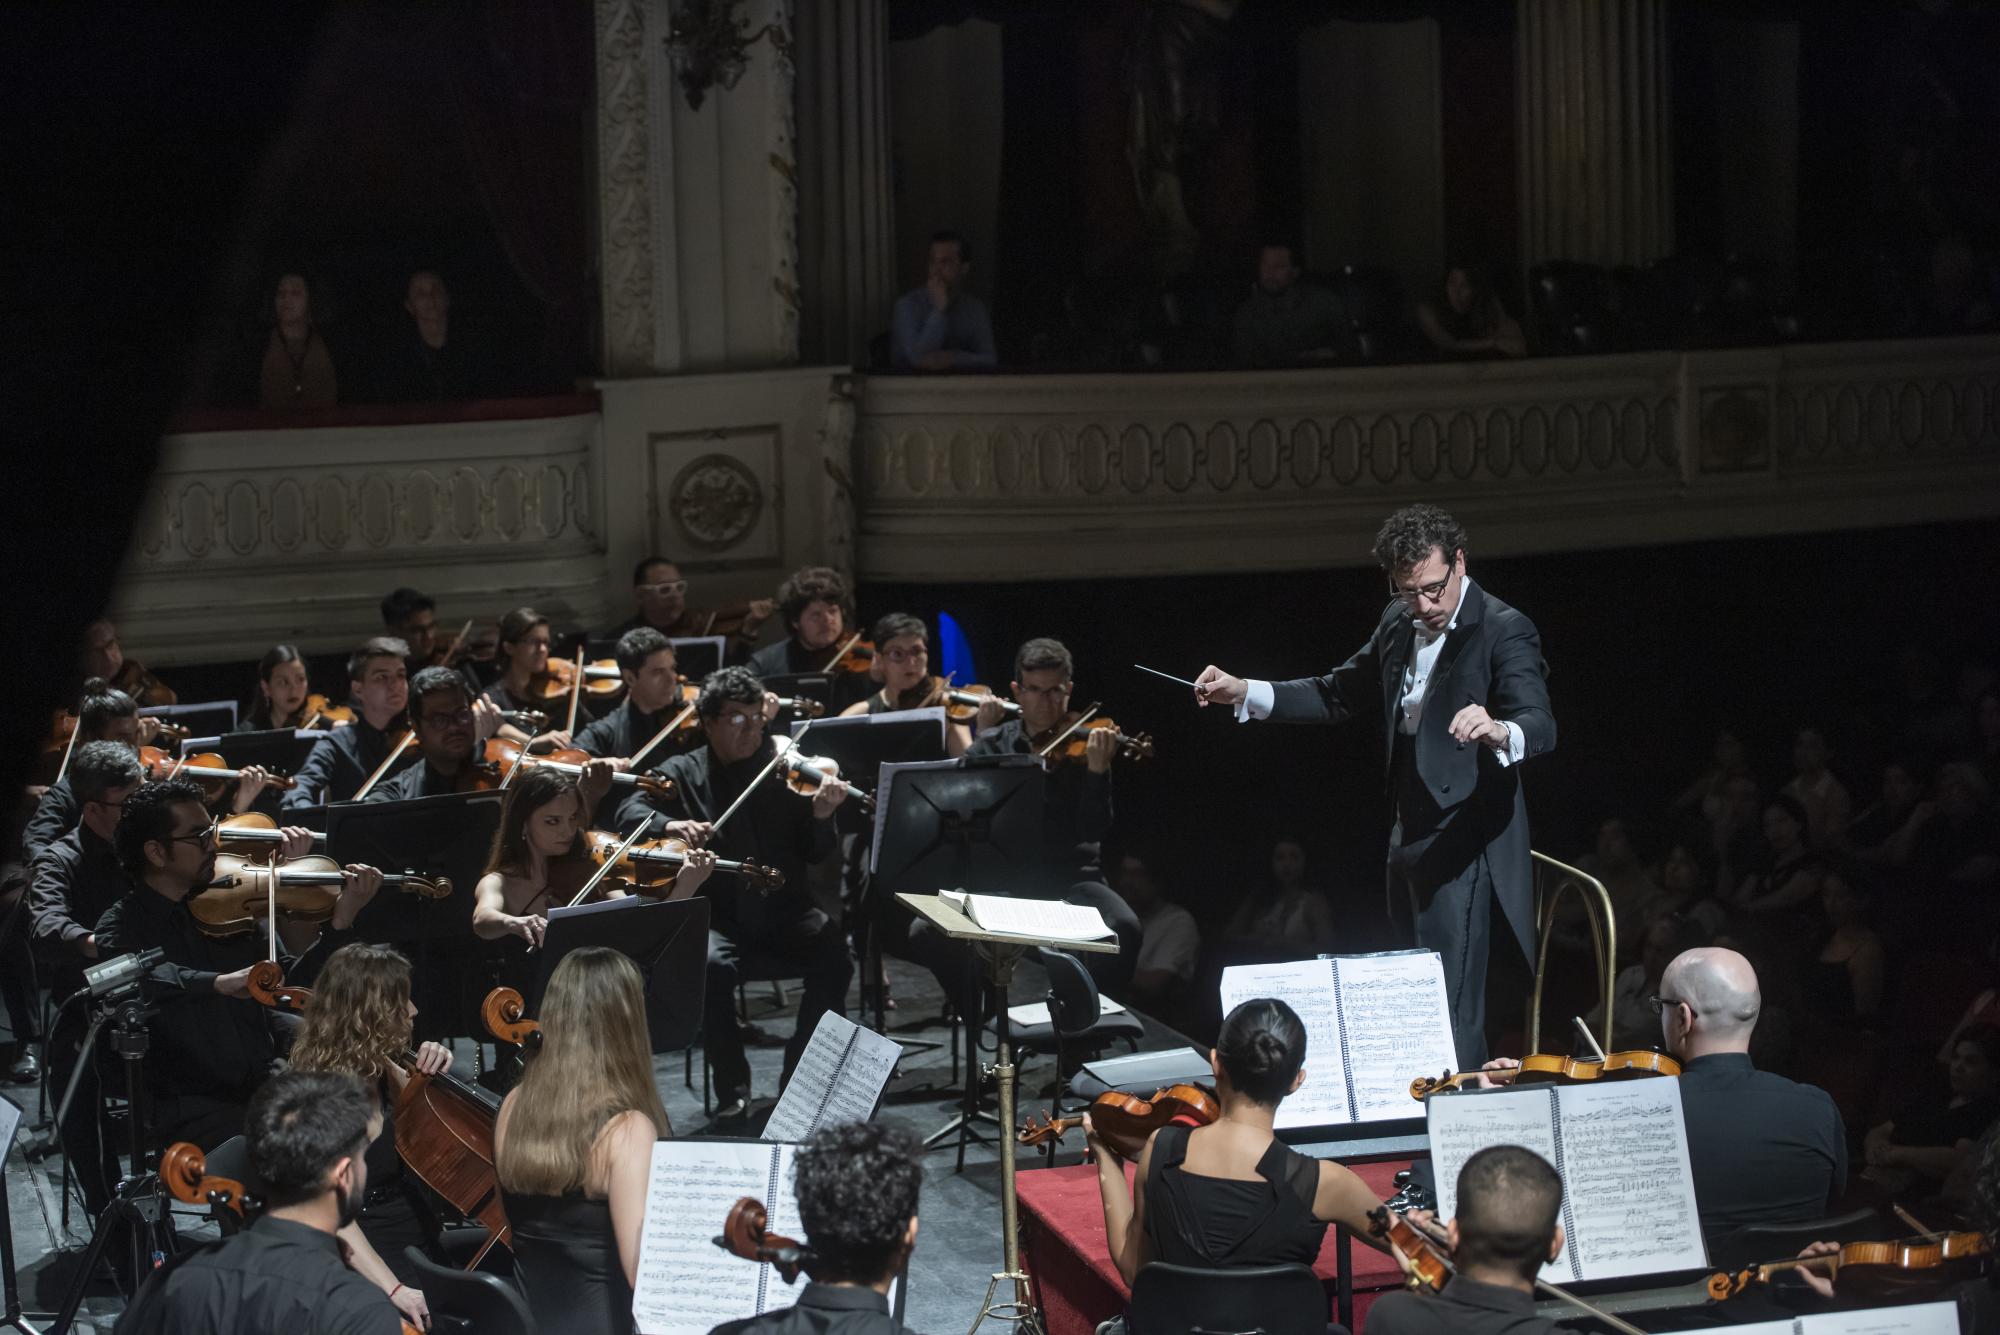 Termina la temporada de conciertos en el Municipal de Santiago con “Mahler total”